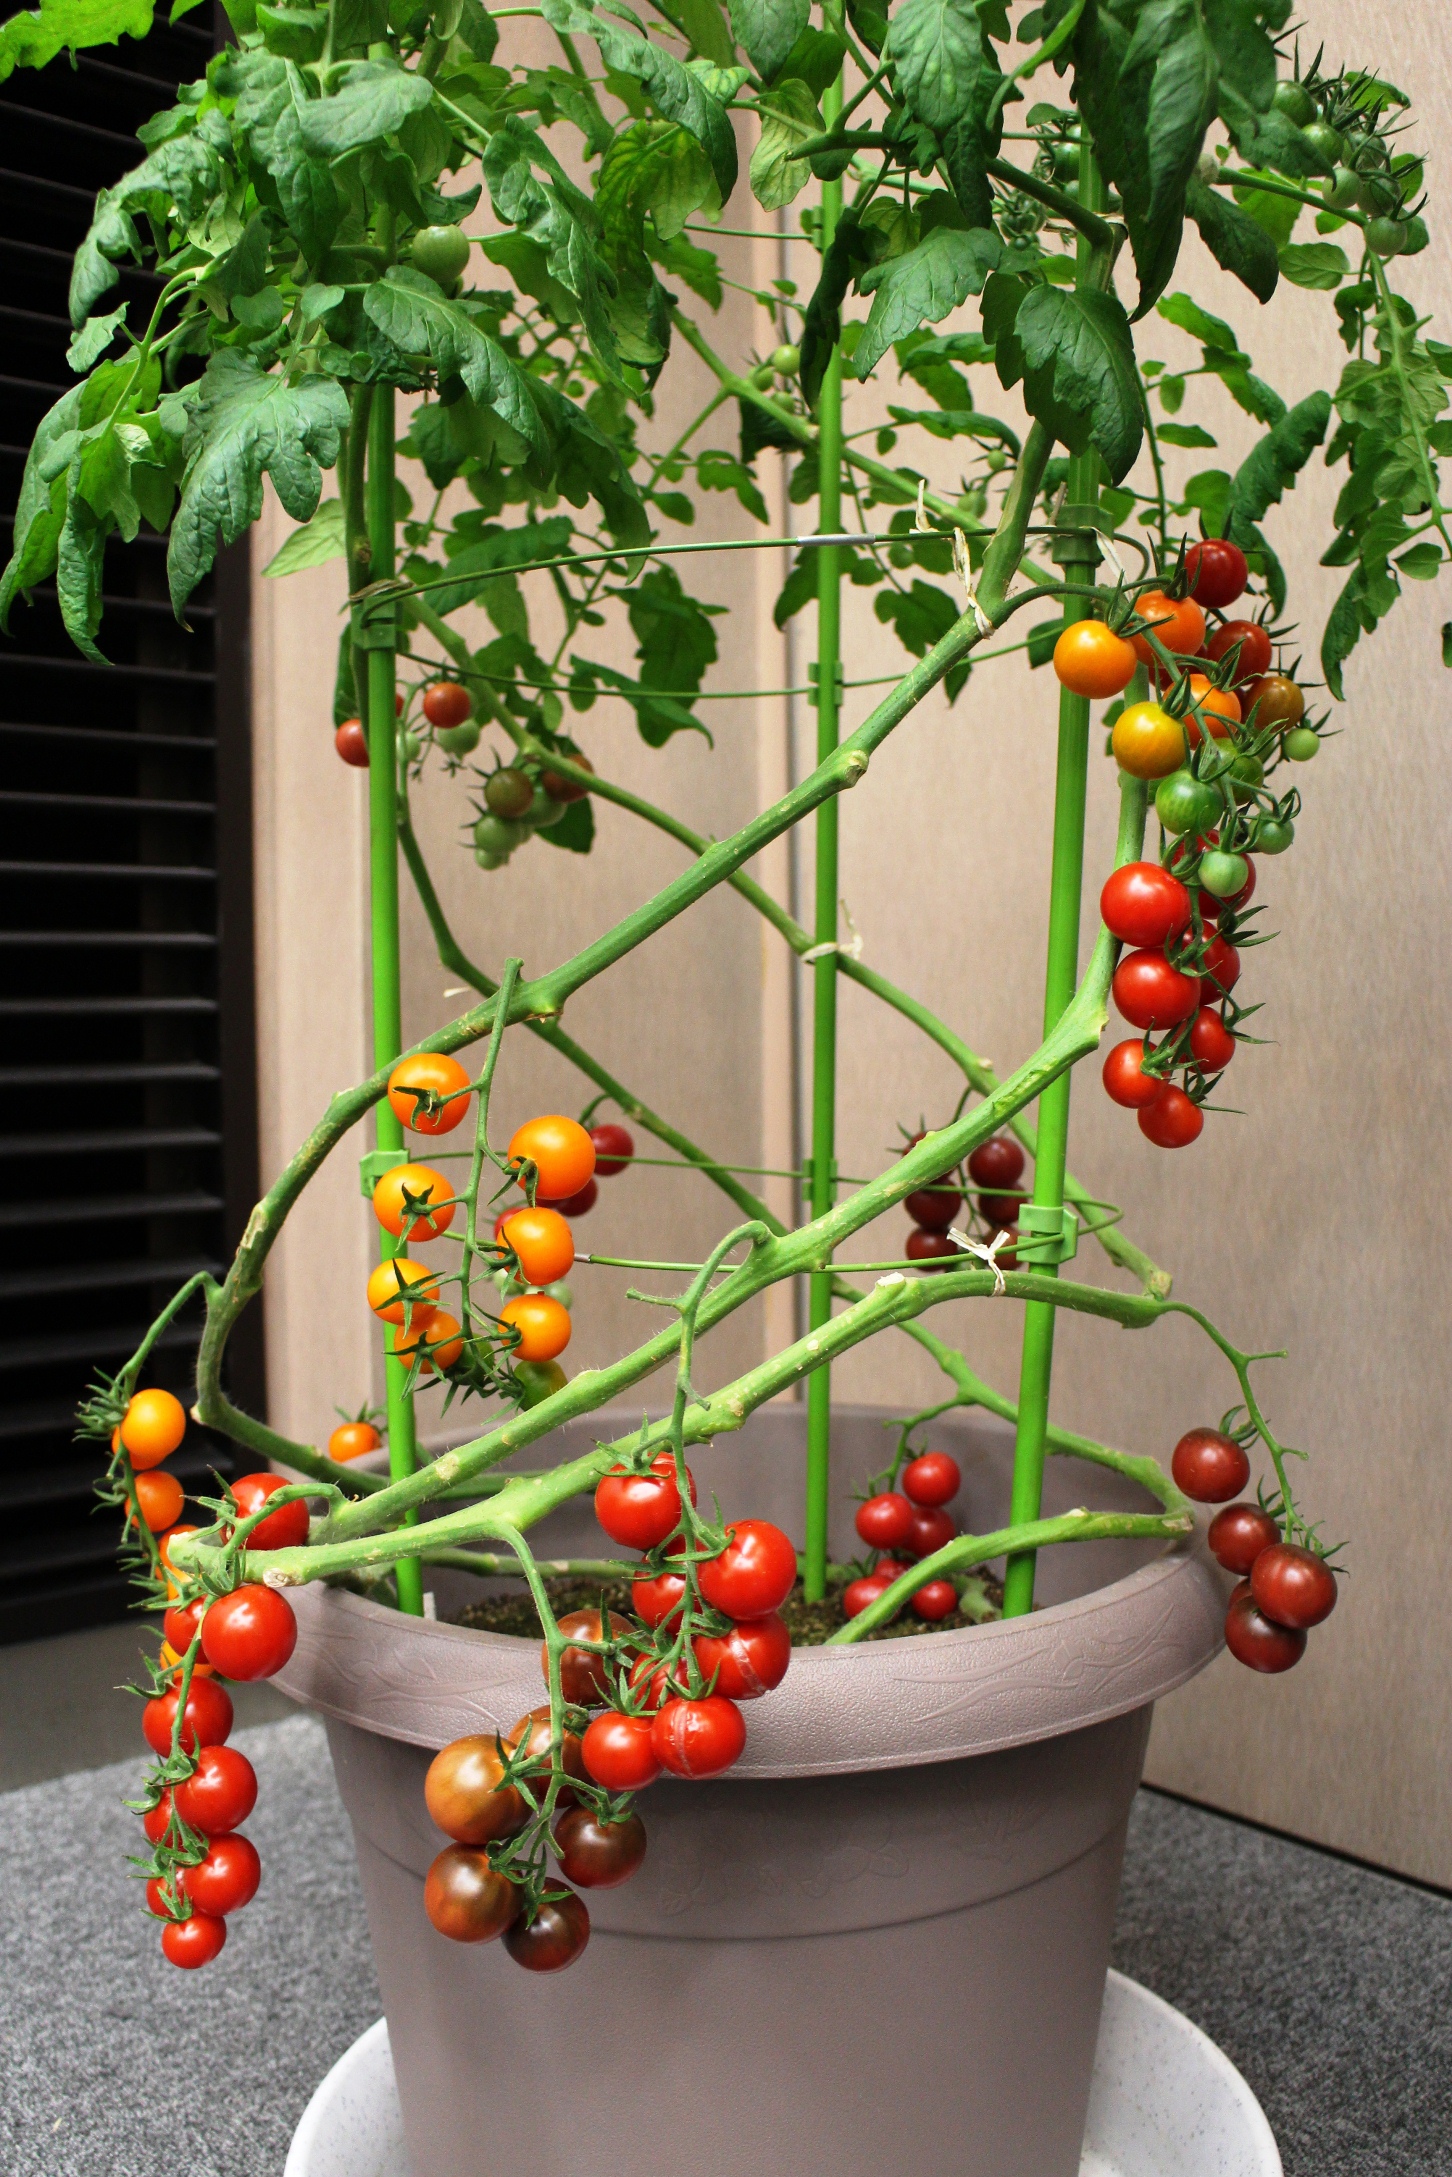 カゴメ オリジナル品種家庭菜園用トマト苗を発売４色のカラーバリエーションでトマトの価値を提案 カゴメ株式会社